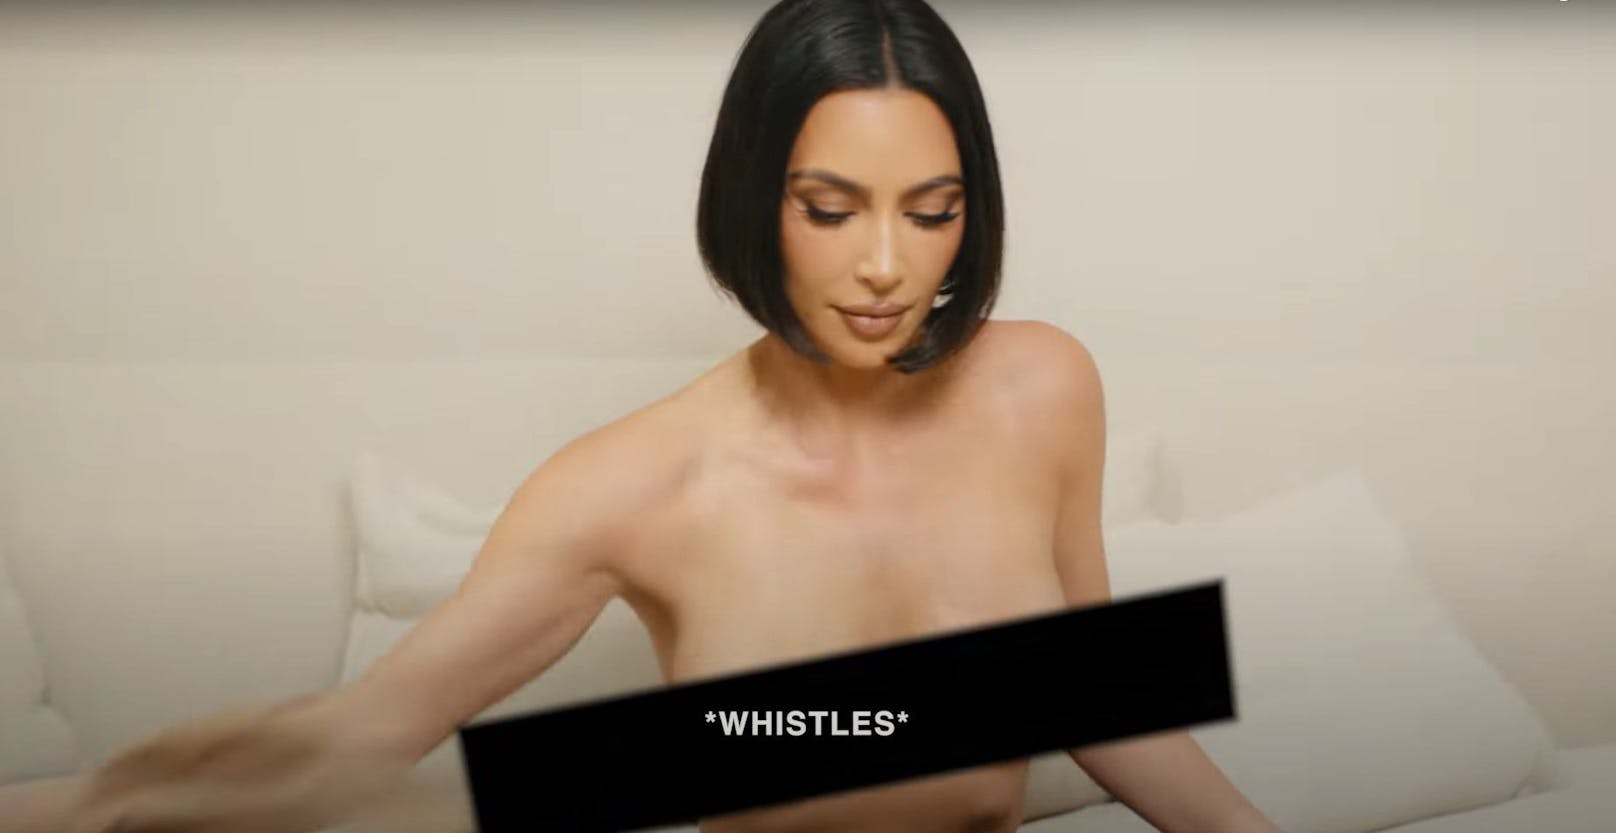 Kim zeigt ihre Brüste, aber alle lachen über ihre Haare